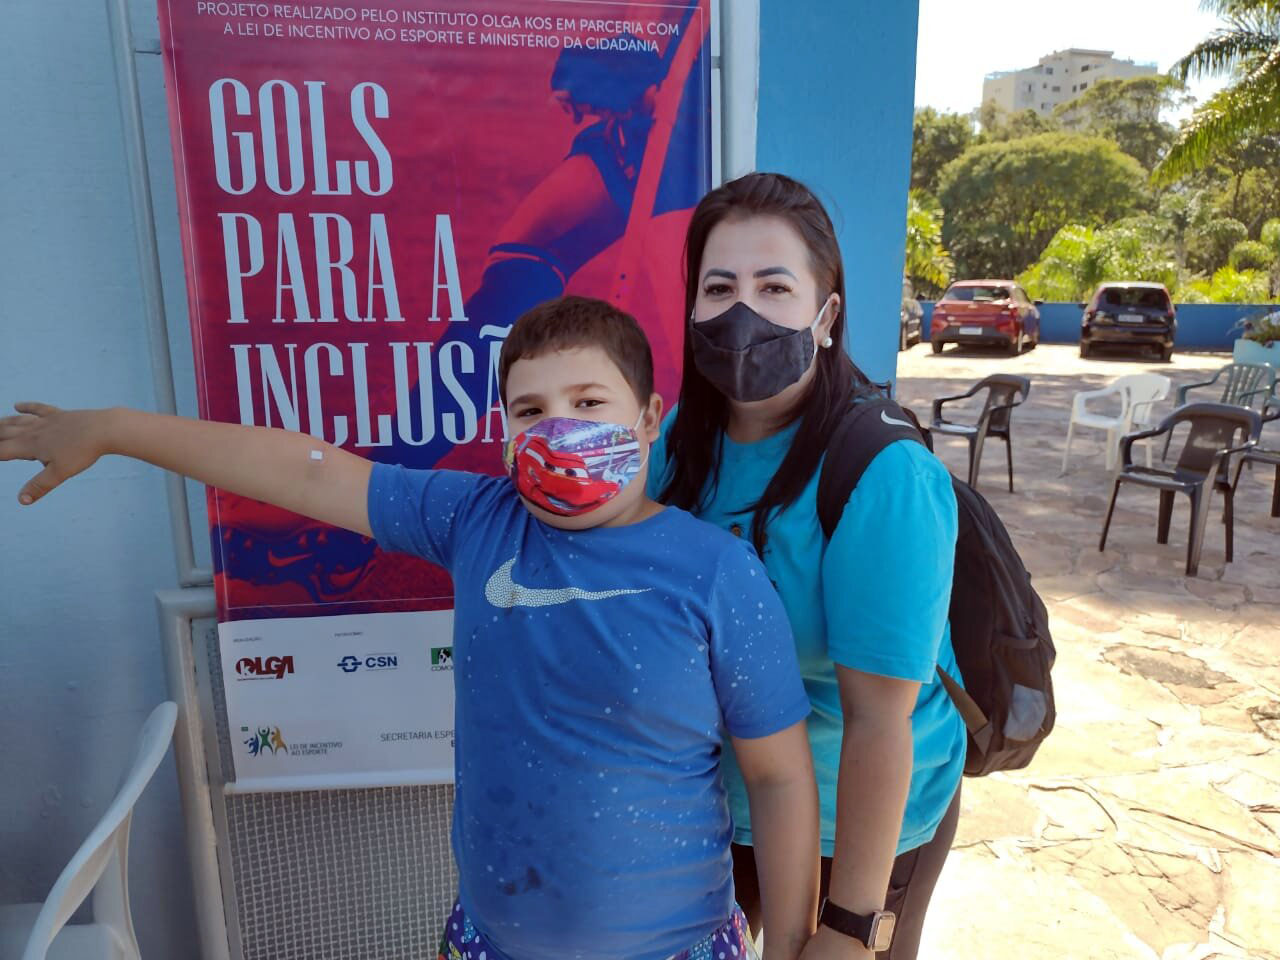 Mãe e filho inscritos no projeto Gols para a Inclusão posam para foto em frente ao banner do programa.